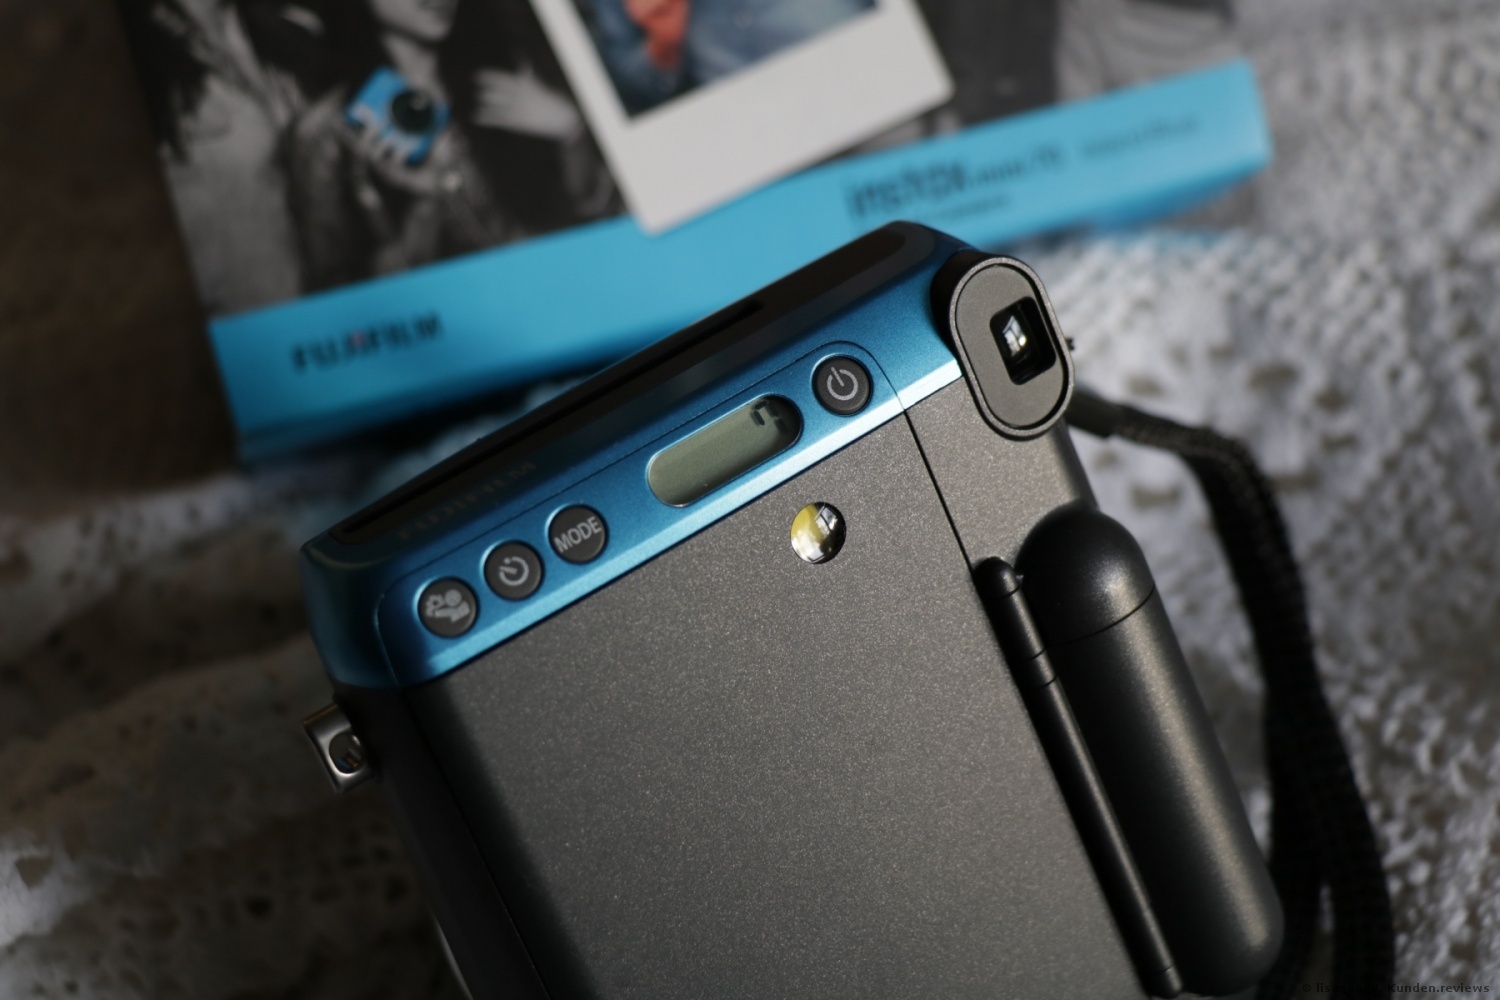 Fujifilm  Instax Mini 70 Sofortbildkameras Foto